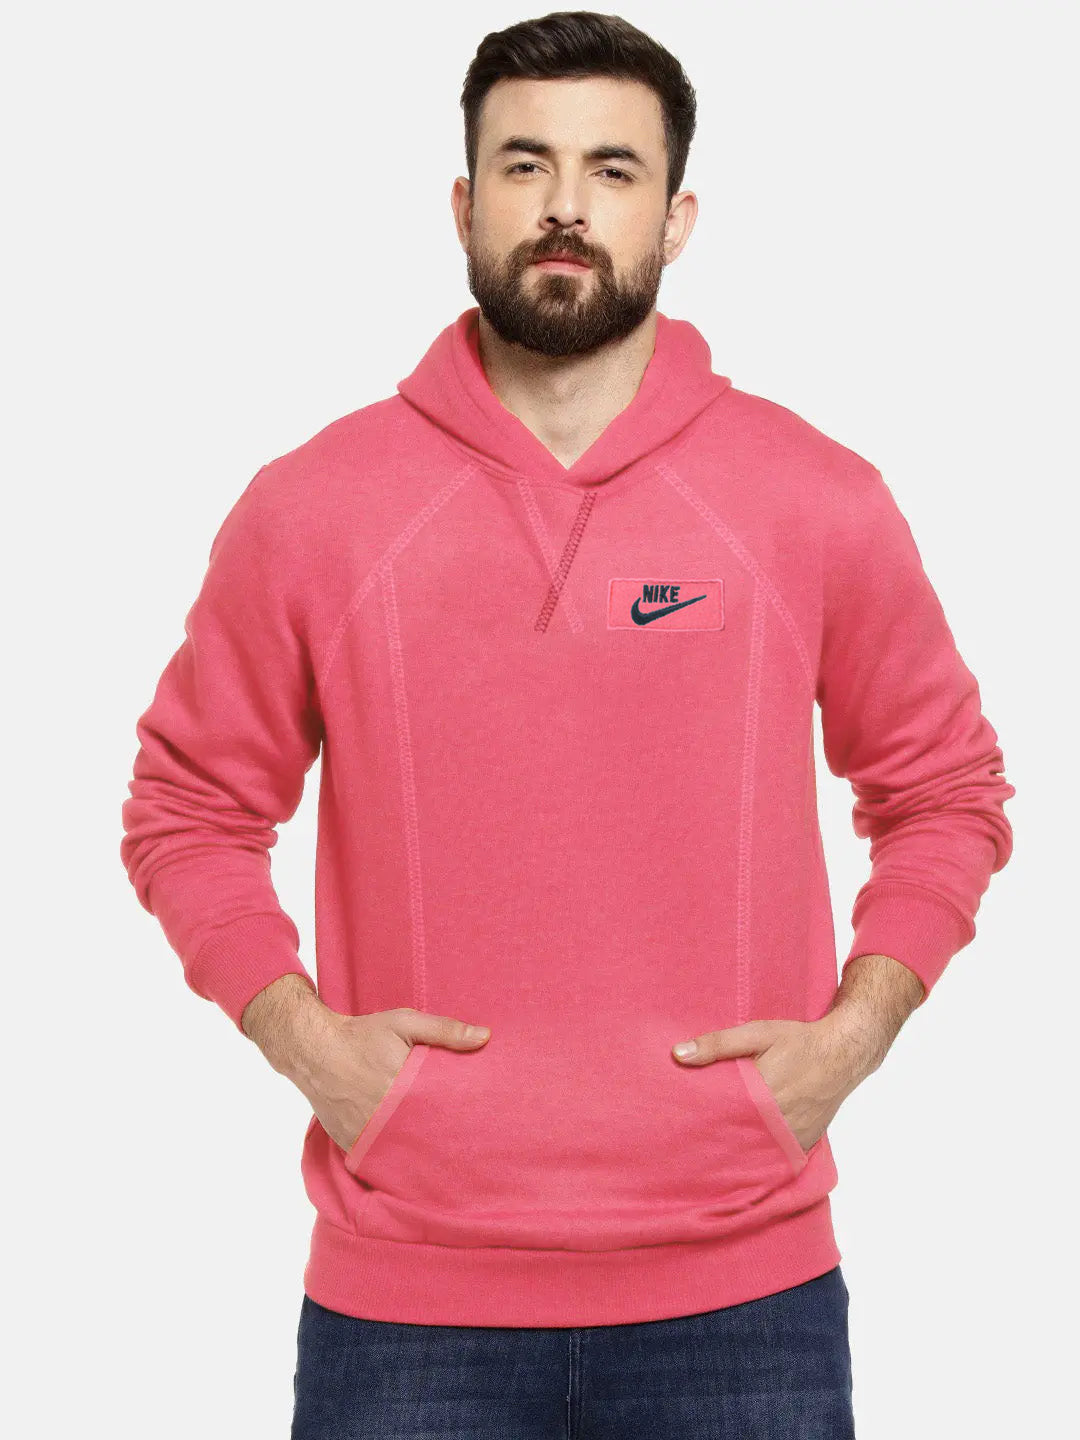 NK Terry Fleece Pullover Hoodie For Men-Pink Melange-SP1415